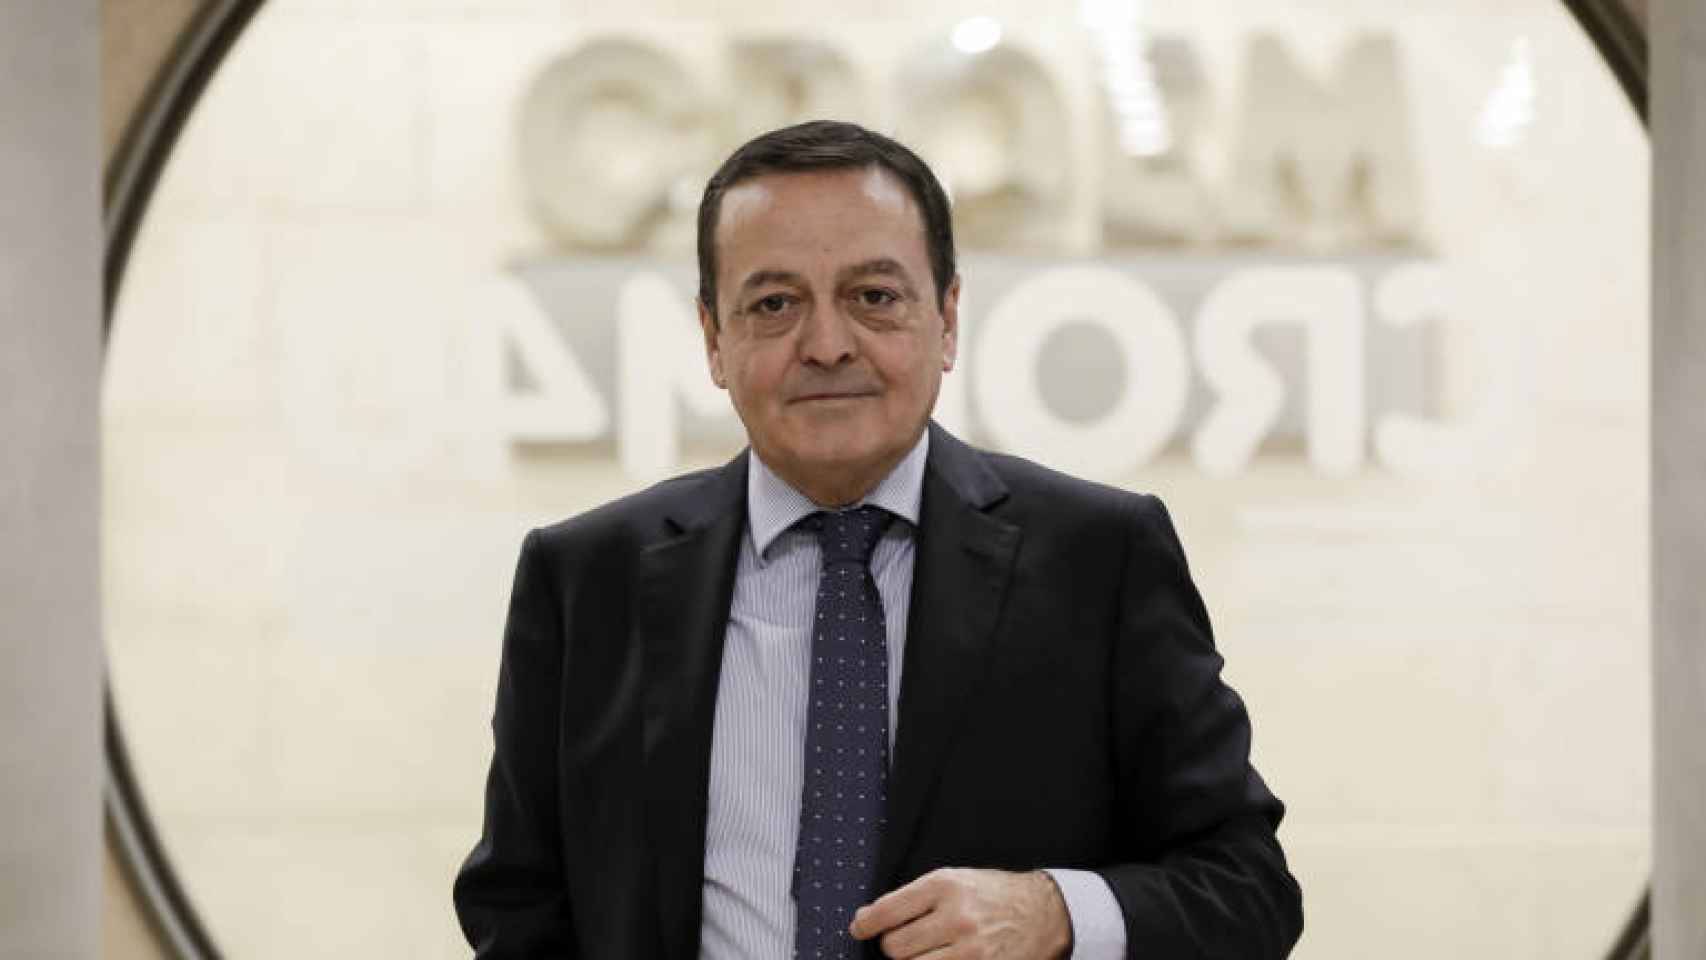 El presidente de la patronal murciana Croem, José María Albarracín.